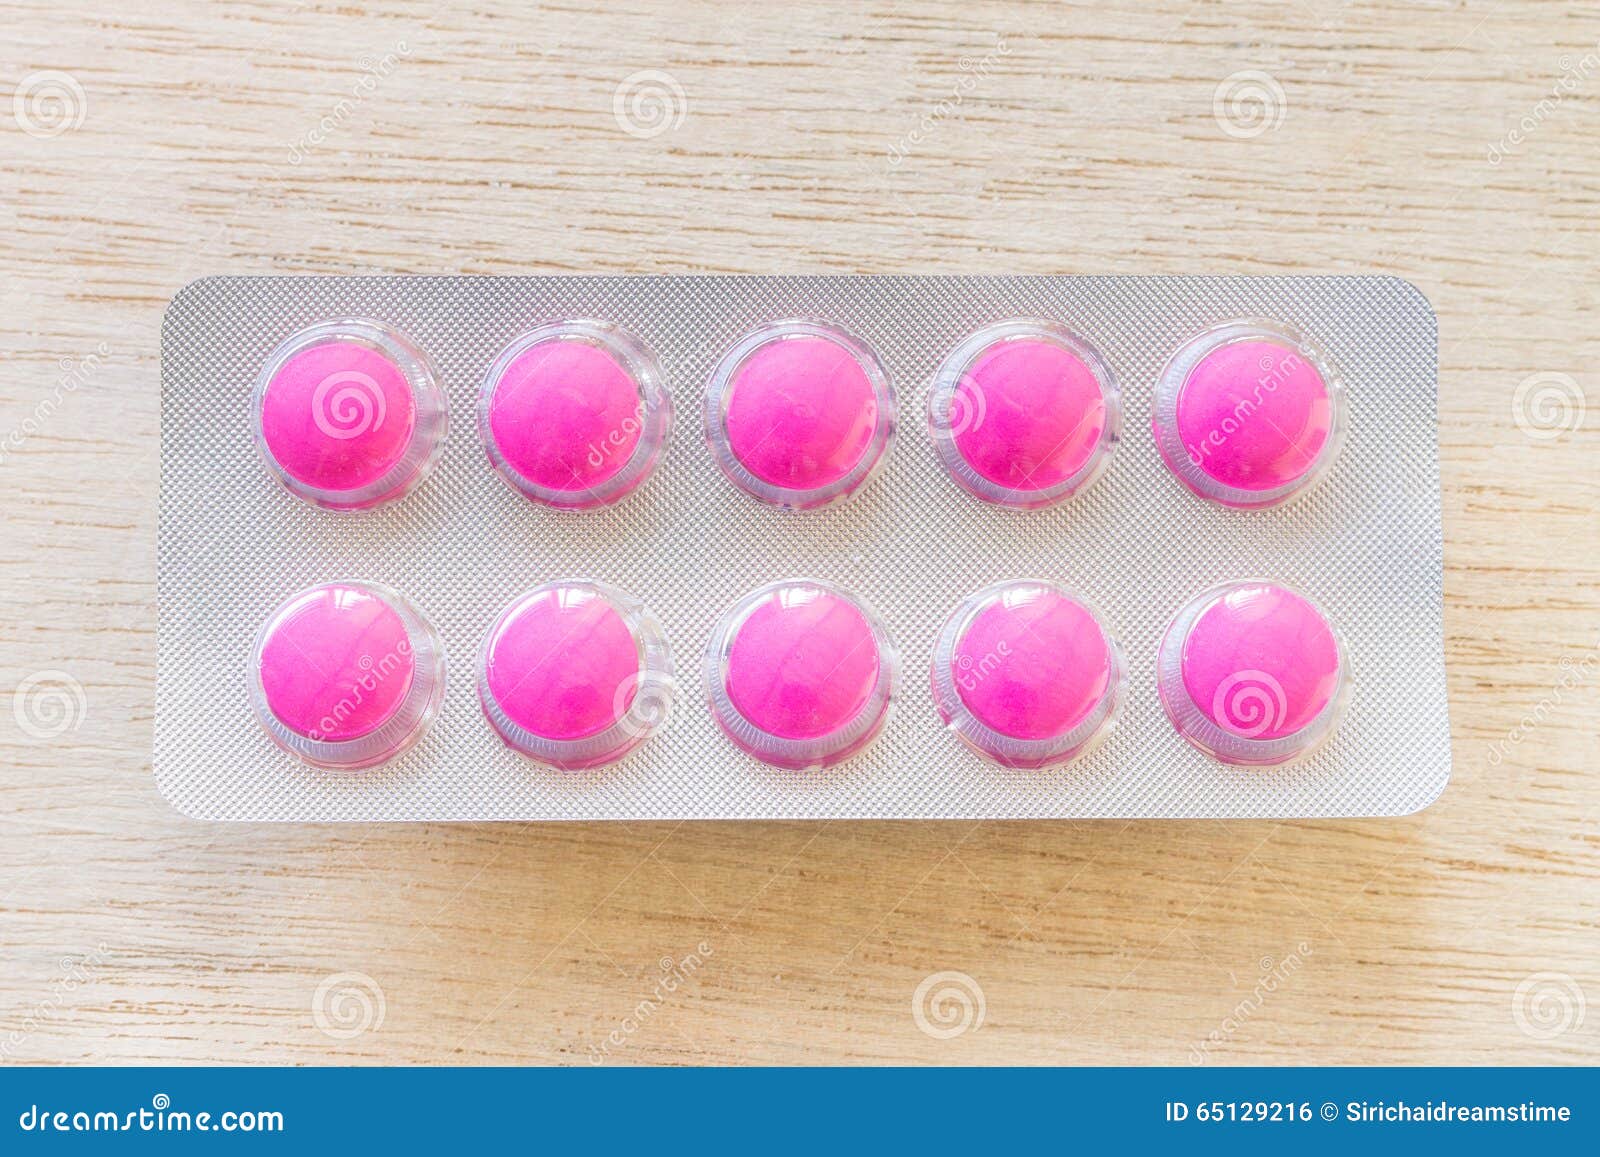 Розовые таблетки название. Розовые таблетки. Таблетки в розовый упоквке. Успокоительные таблетки розового цвета.